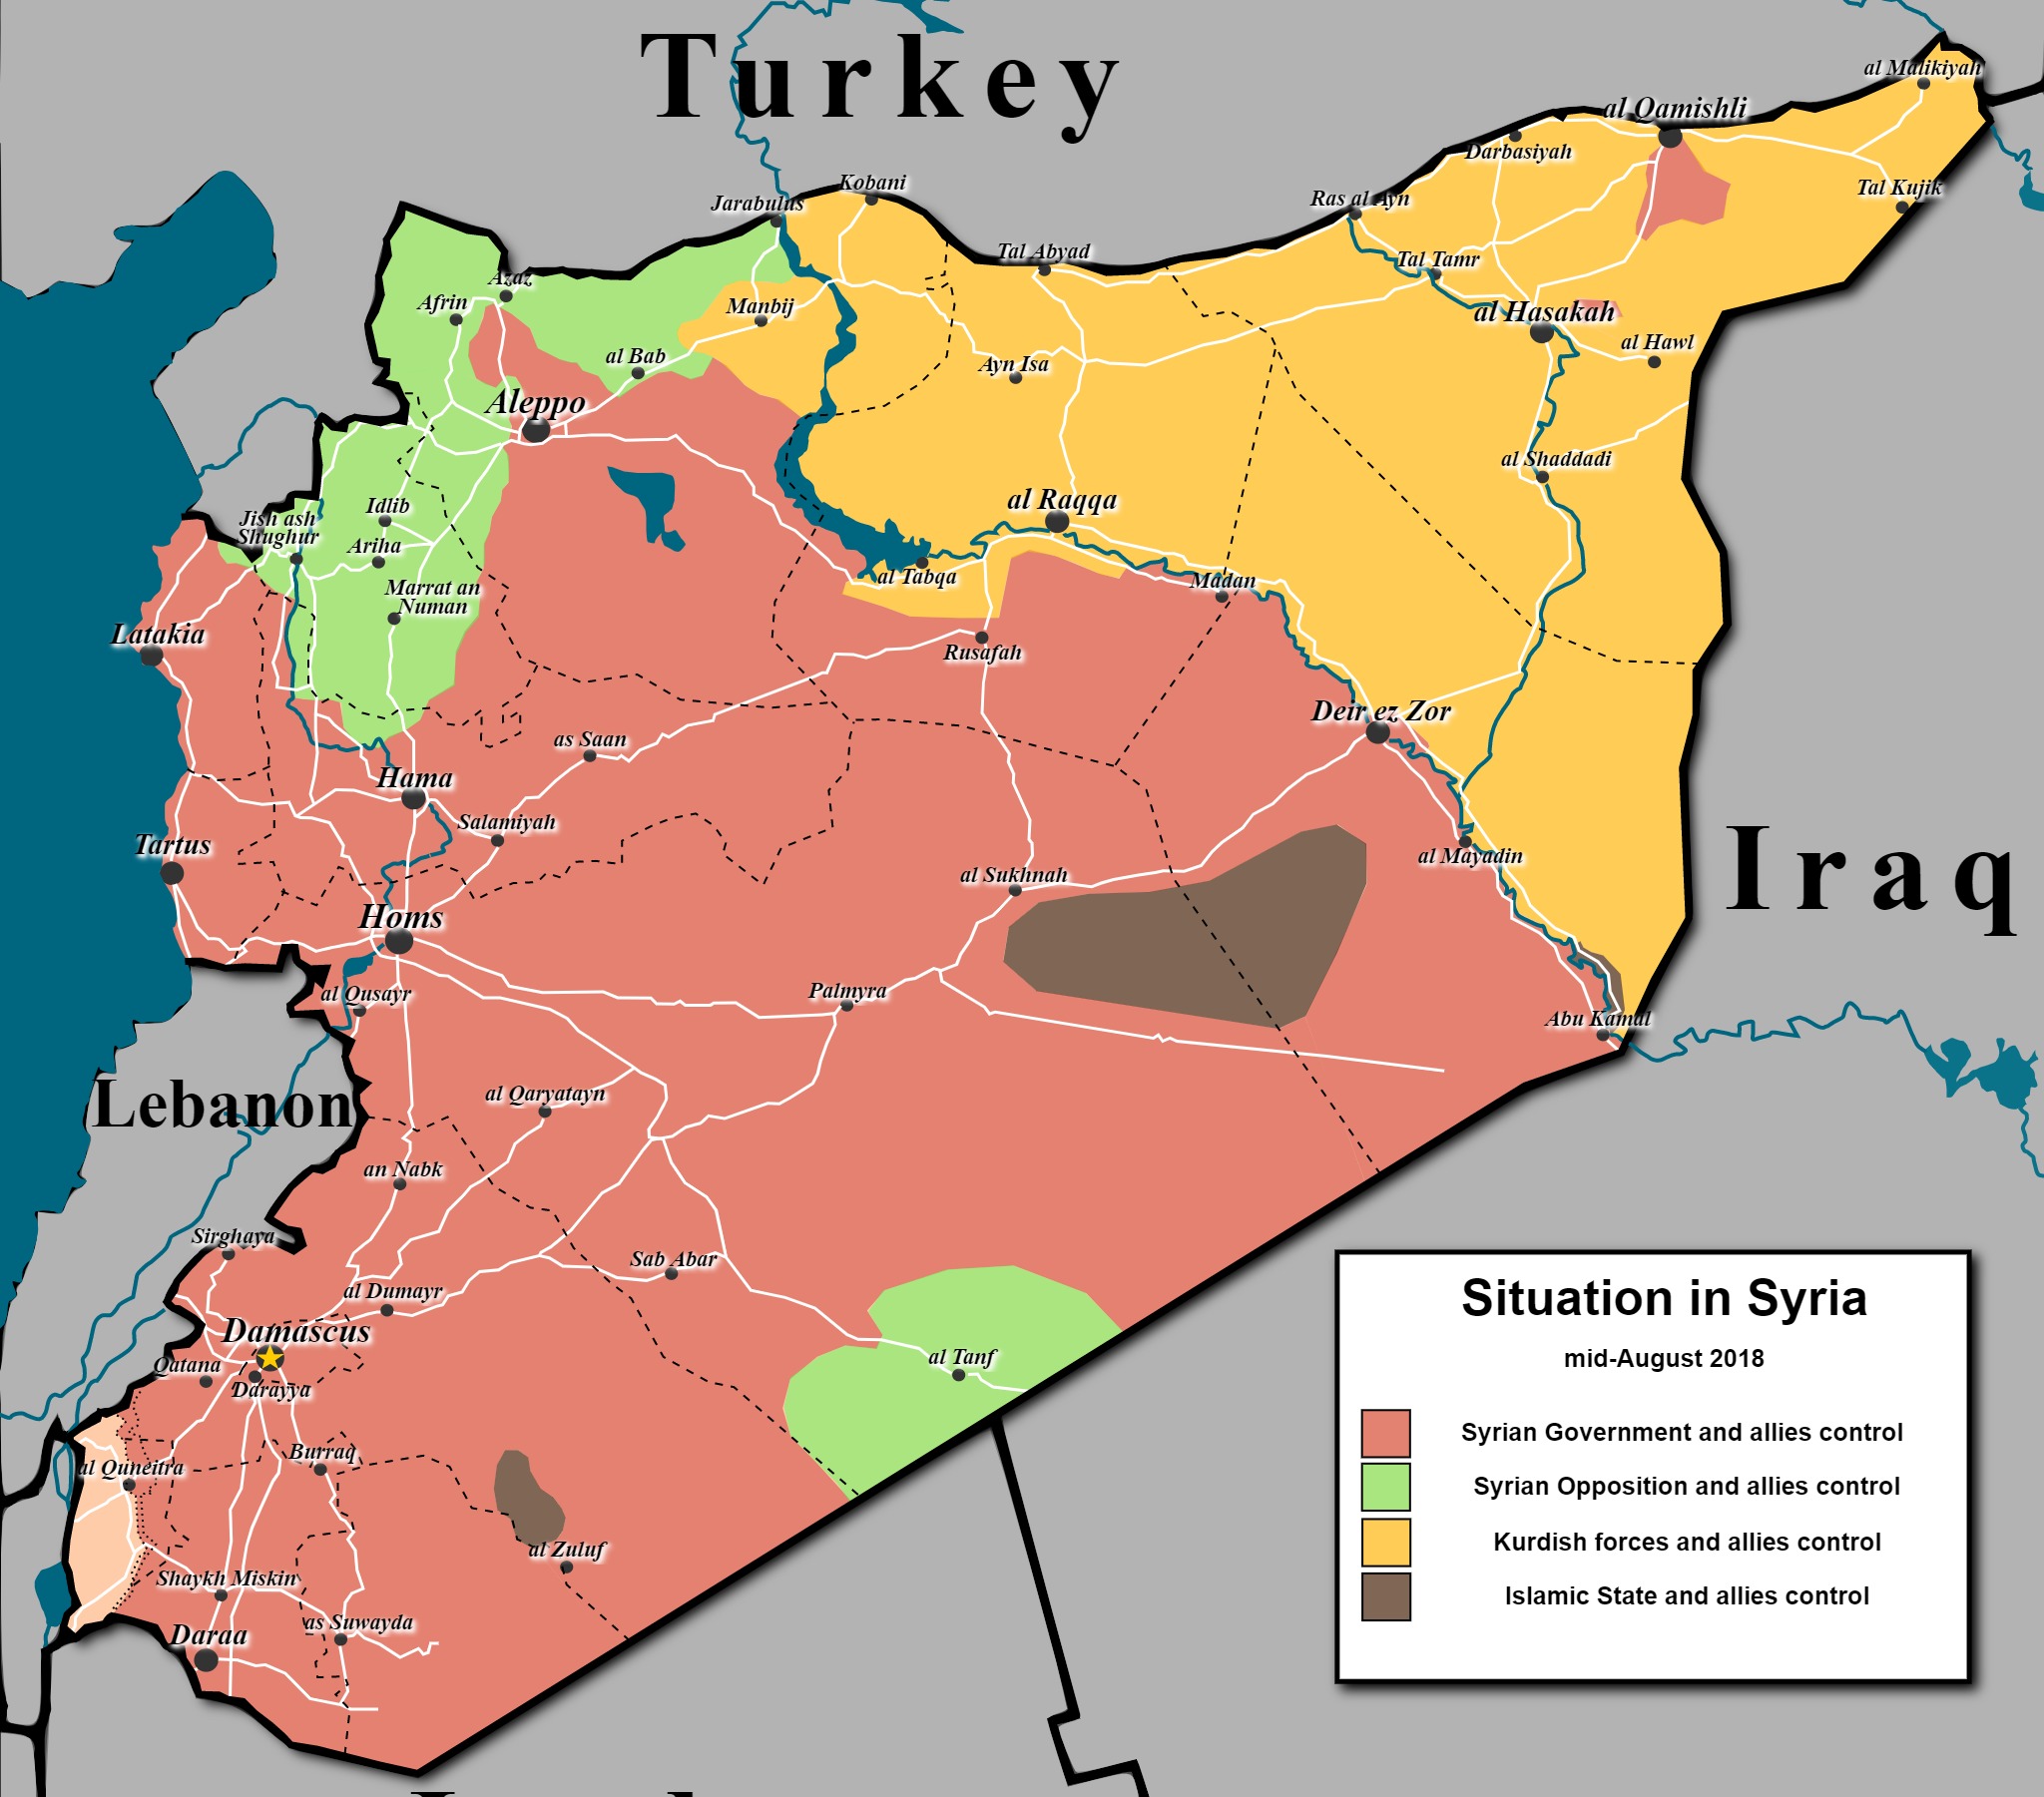 A térkép a szíriai polgárháború 2018-as állását mutatja. A frontok azonban azóta nem változtak jelentősen, így a viszonyok átlátására még alkalmas a térkép. 